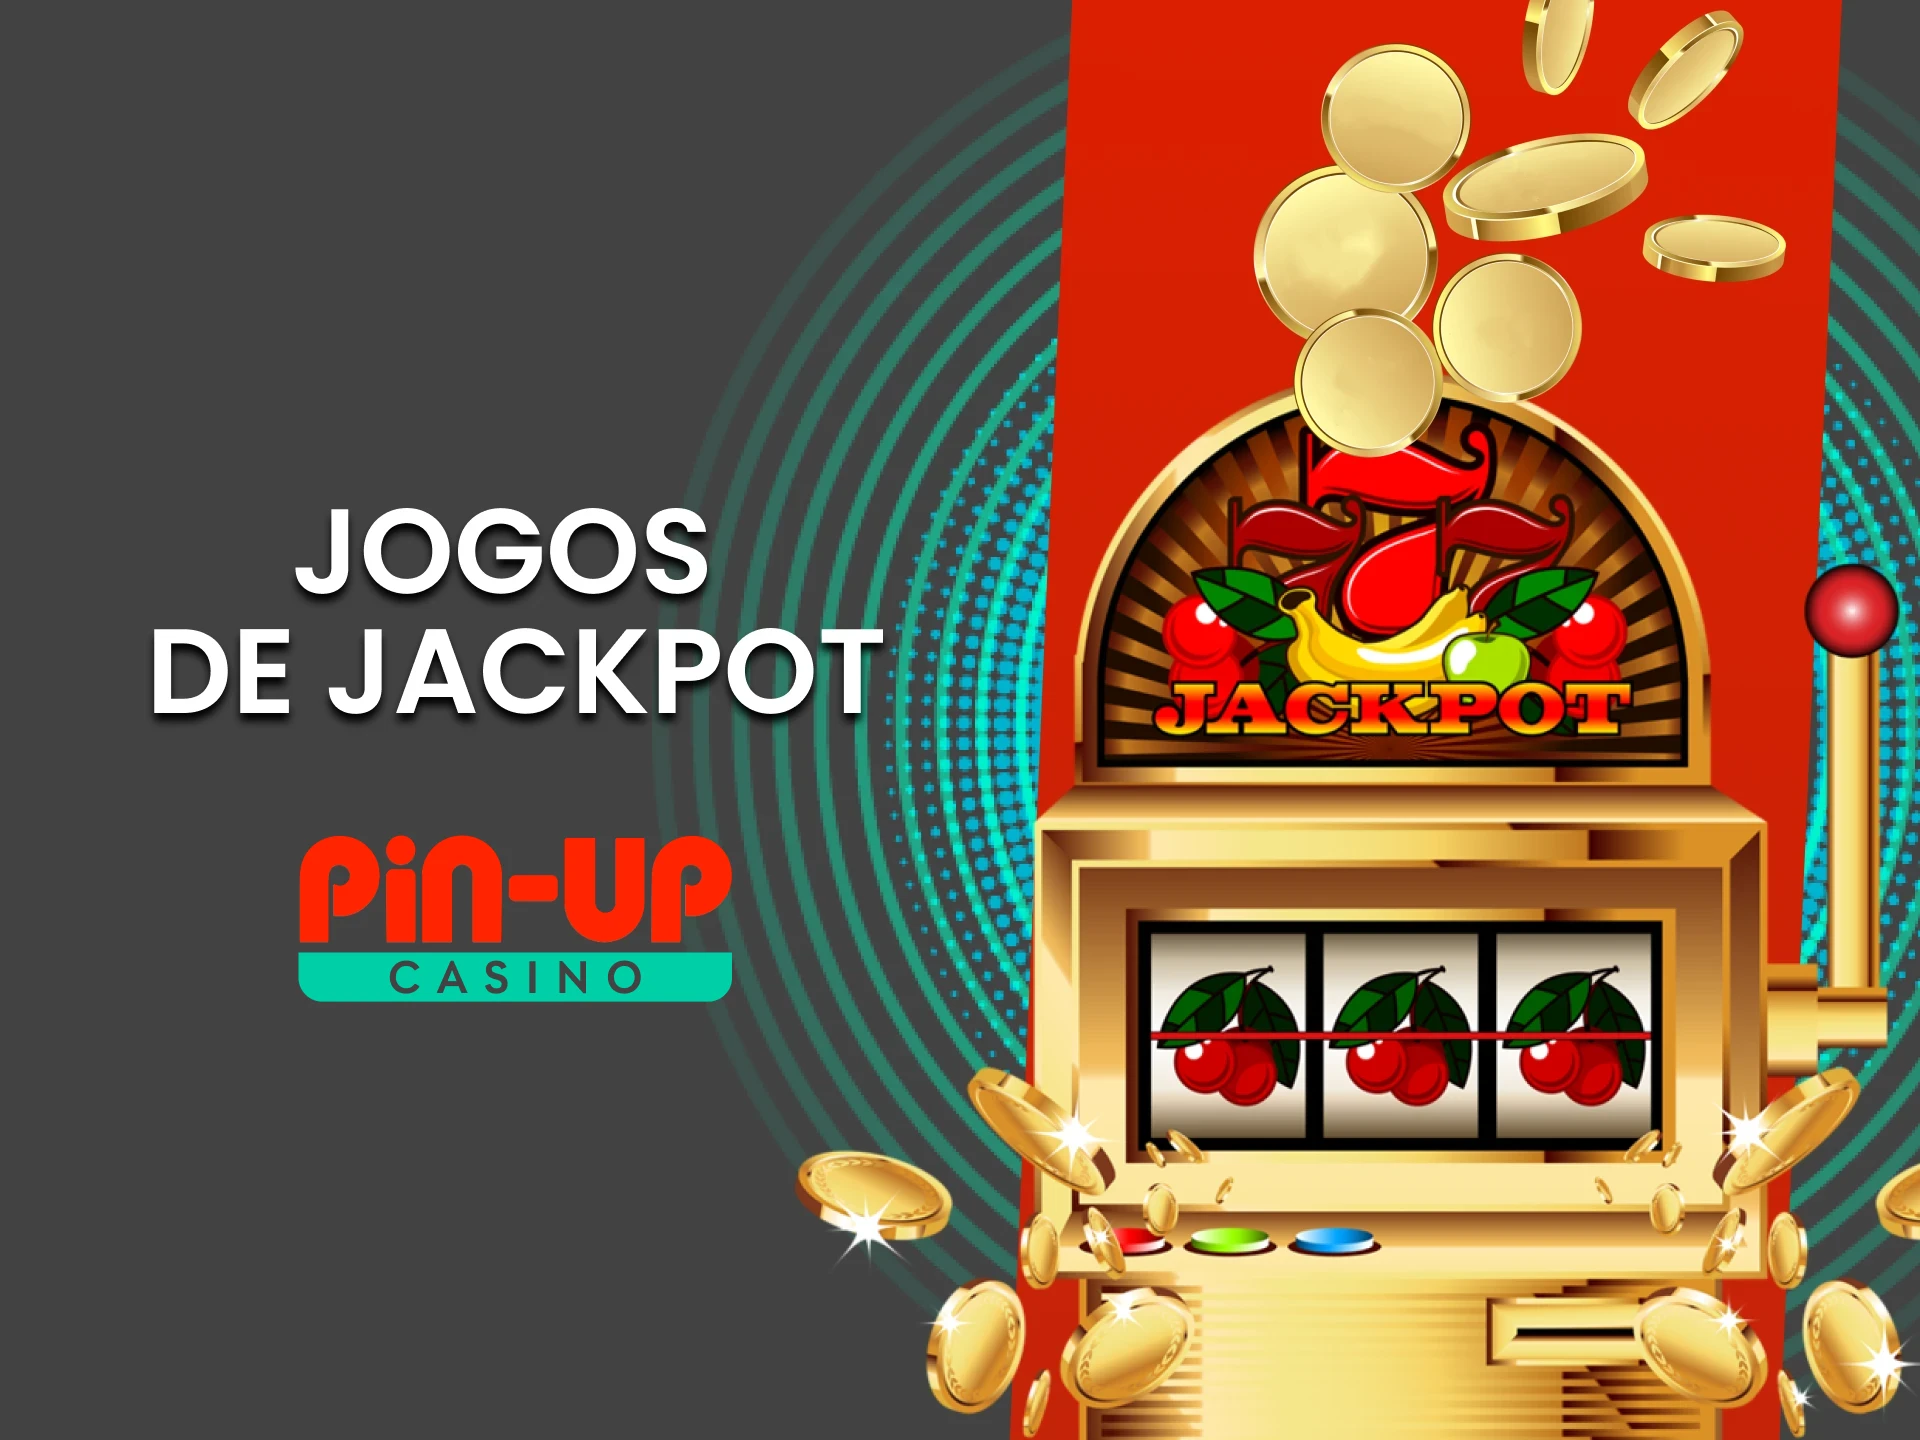 Para jogos de cassino no Pin Up, escolha Jackpot.